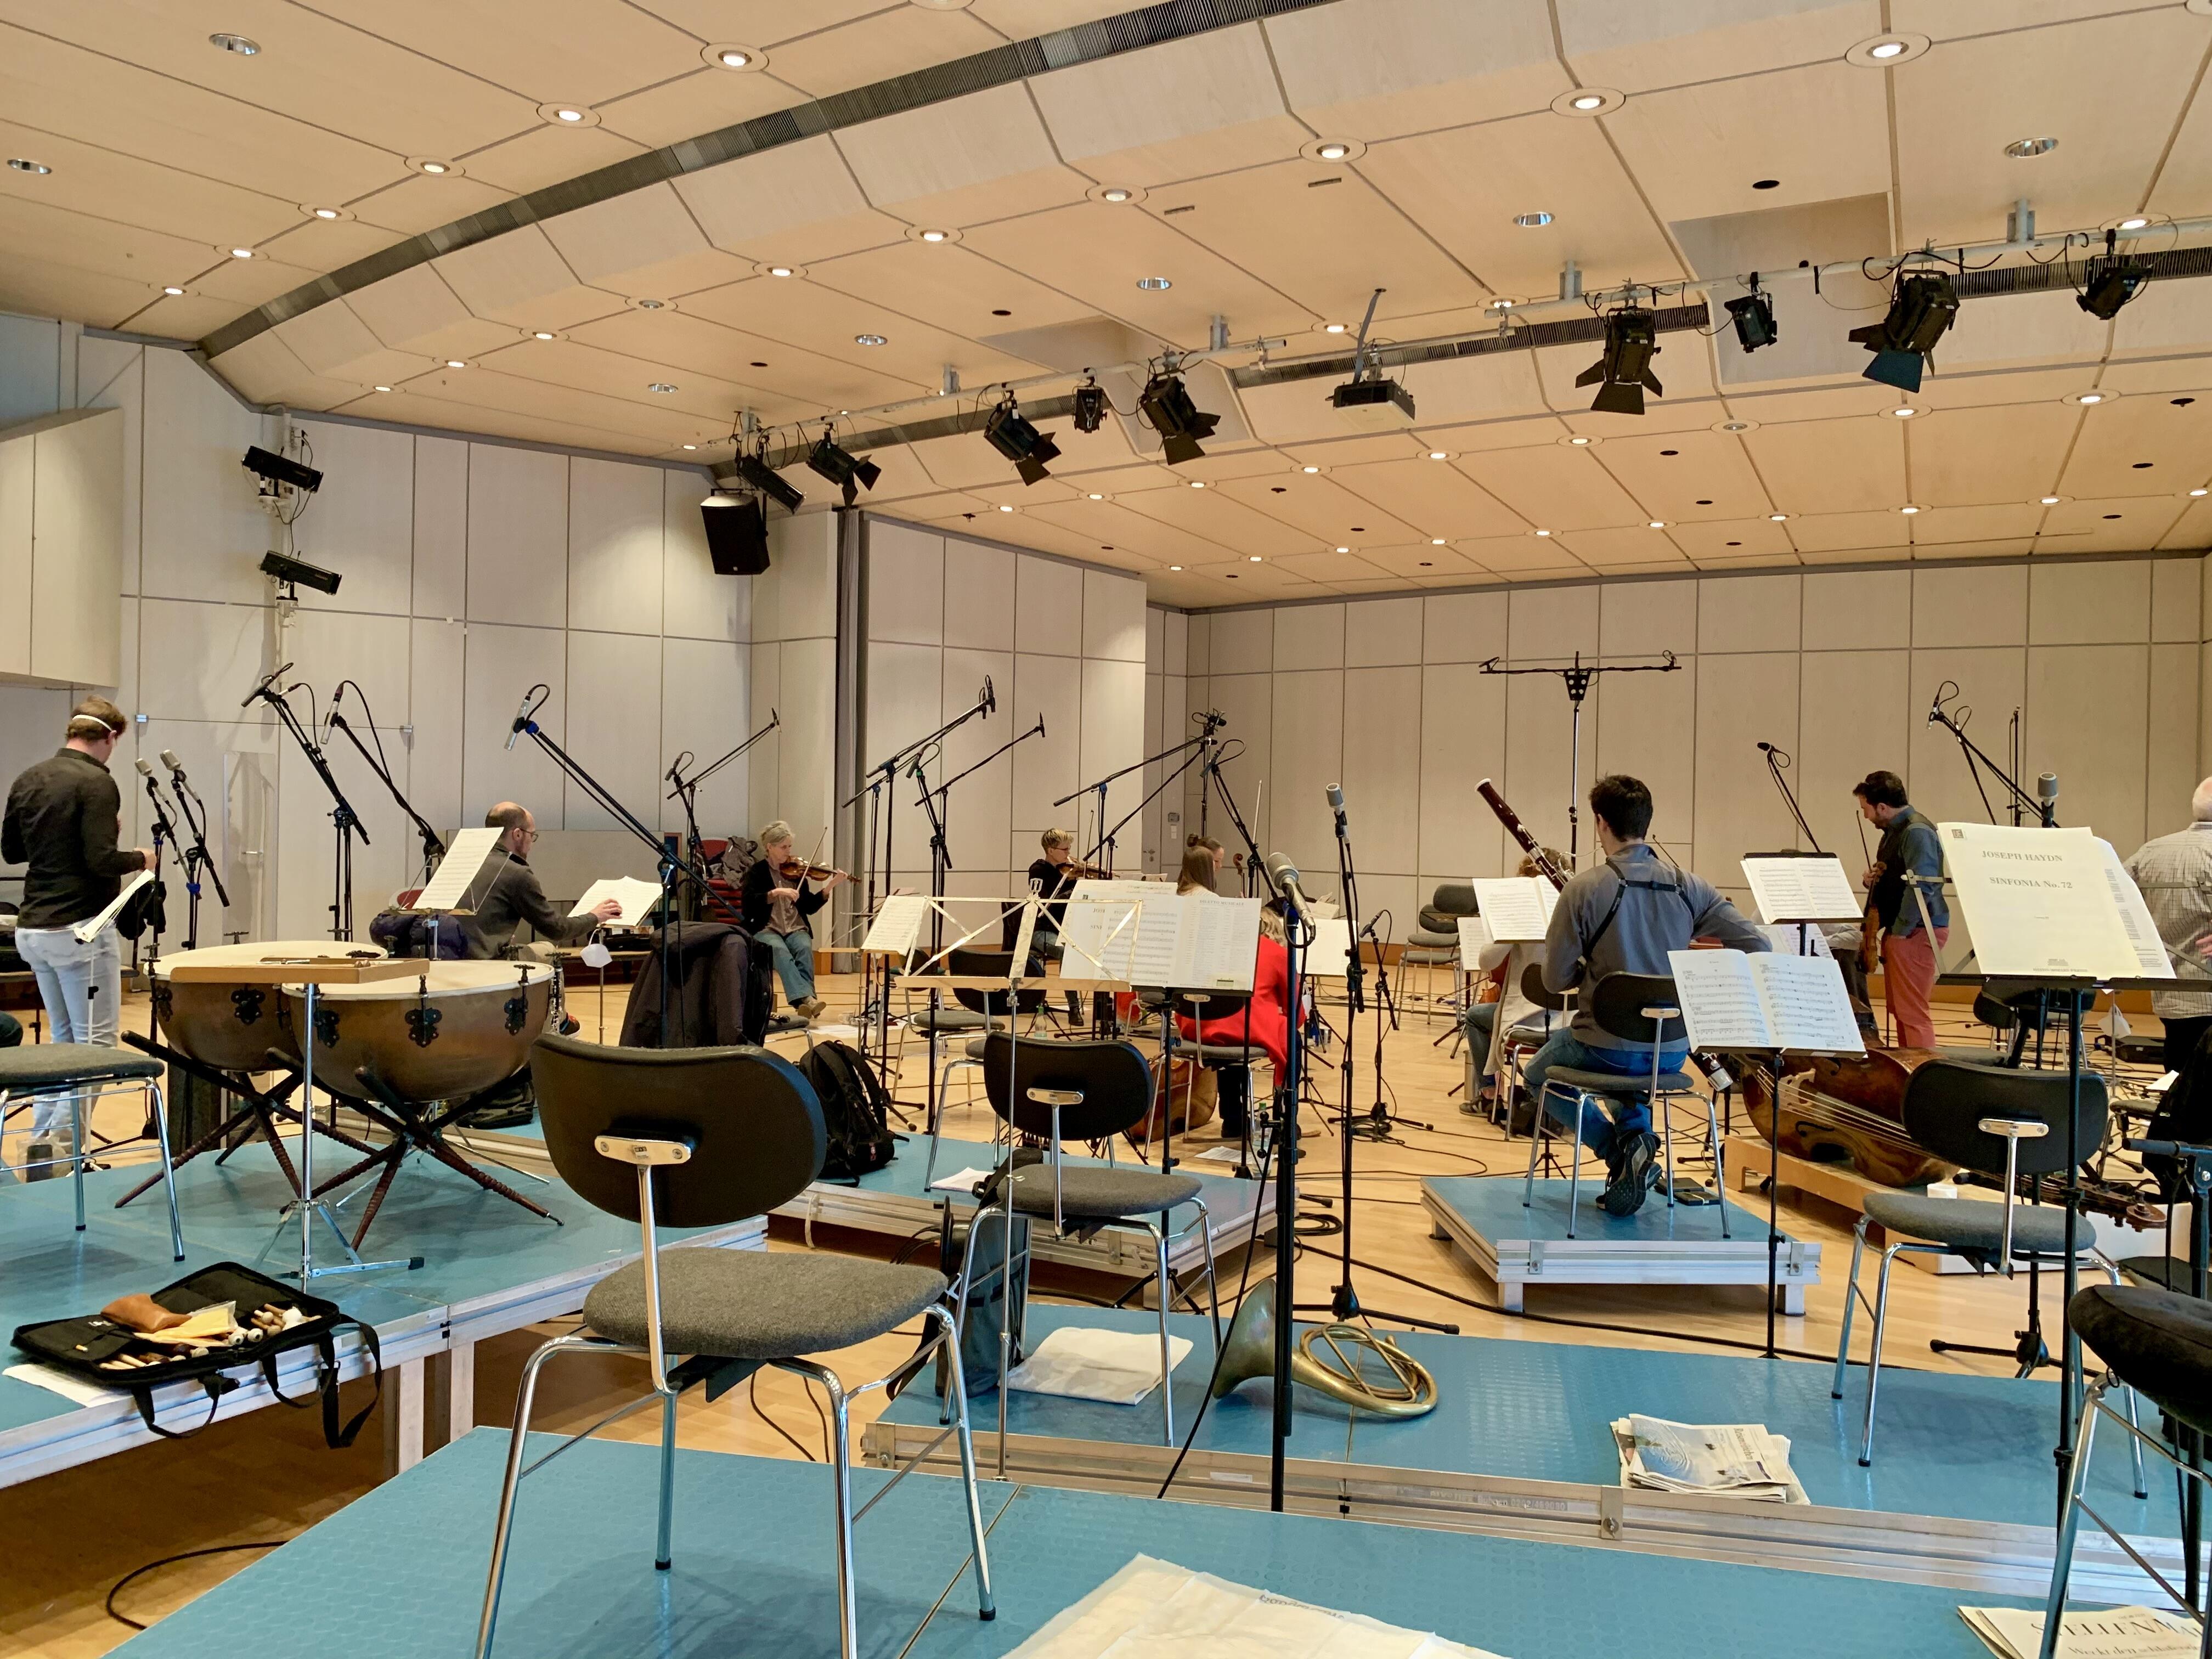 ハイデルベルク交響楽団が頻繁にリハーサル、録音で使用する、ハイデルベルク郊外の公民館。